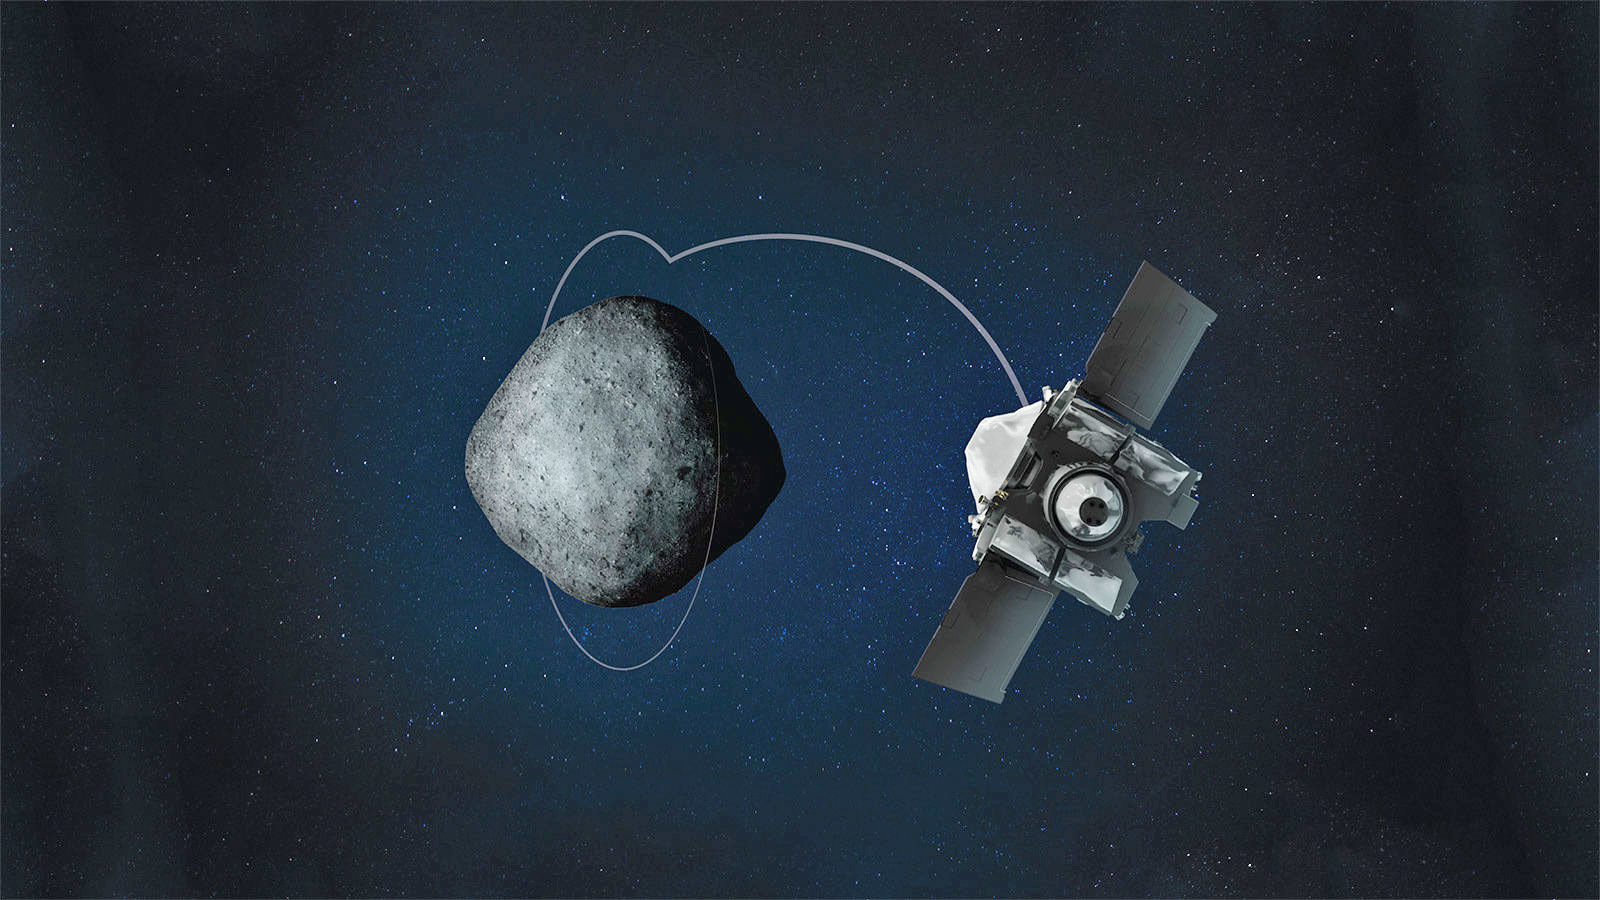 NASA’nın OSIRIS-REx uzay aracı, Bennu asteroidinin yörüngesine oturdu